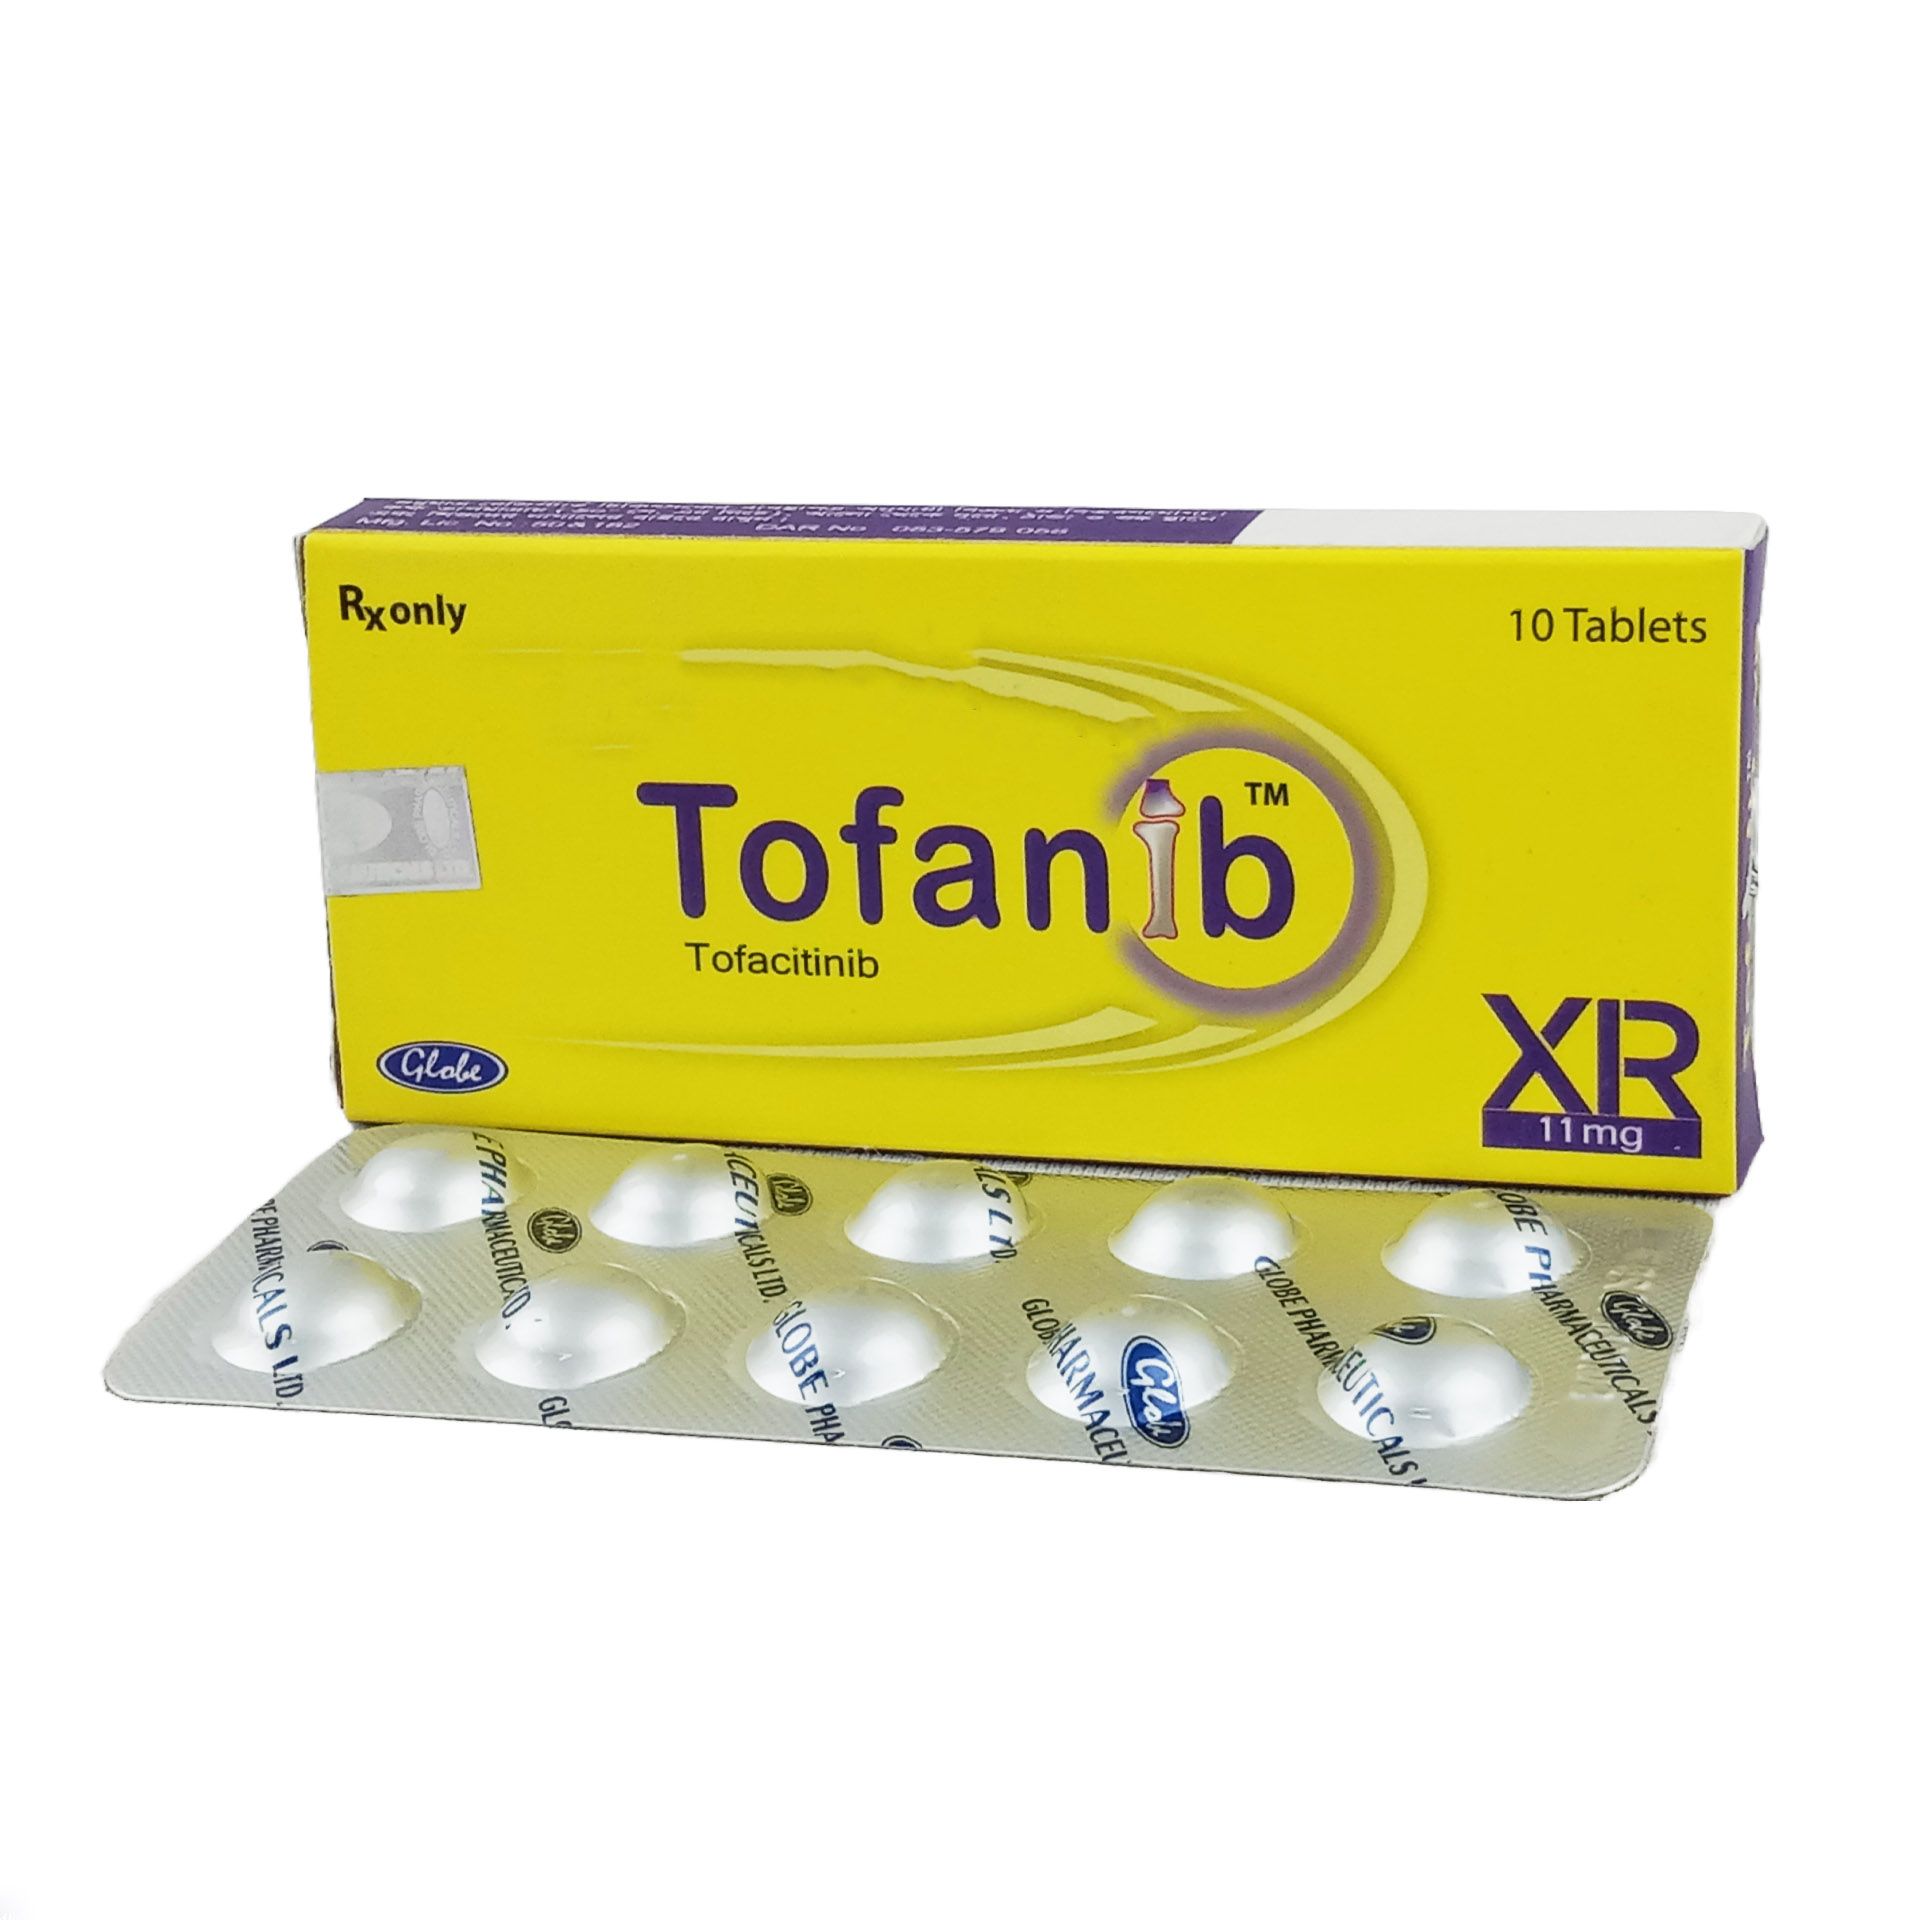 Tofanib XR 11mg Tablet